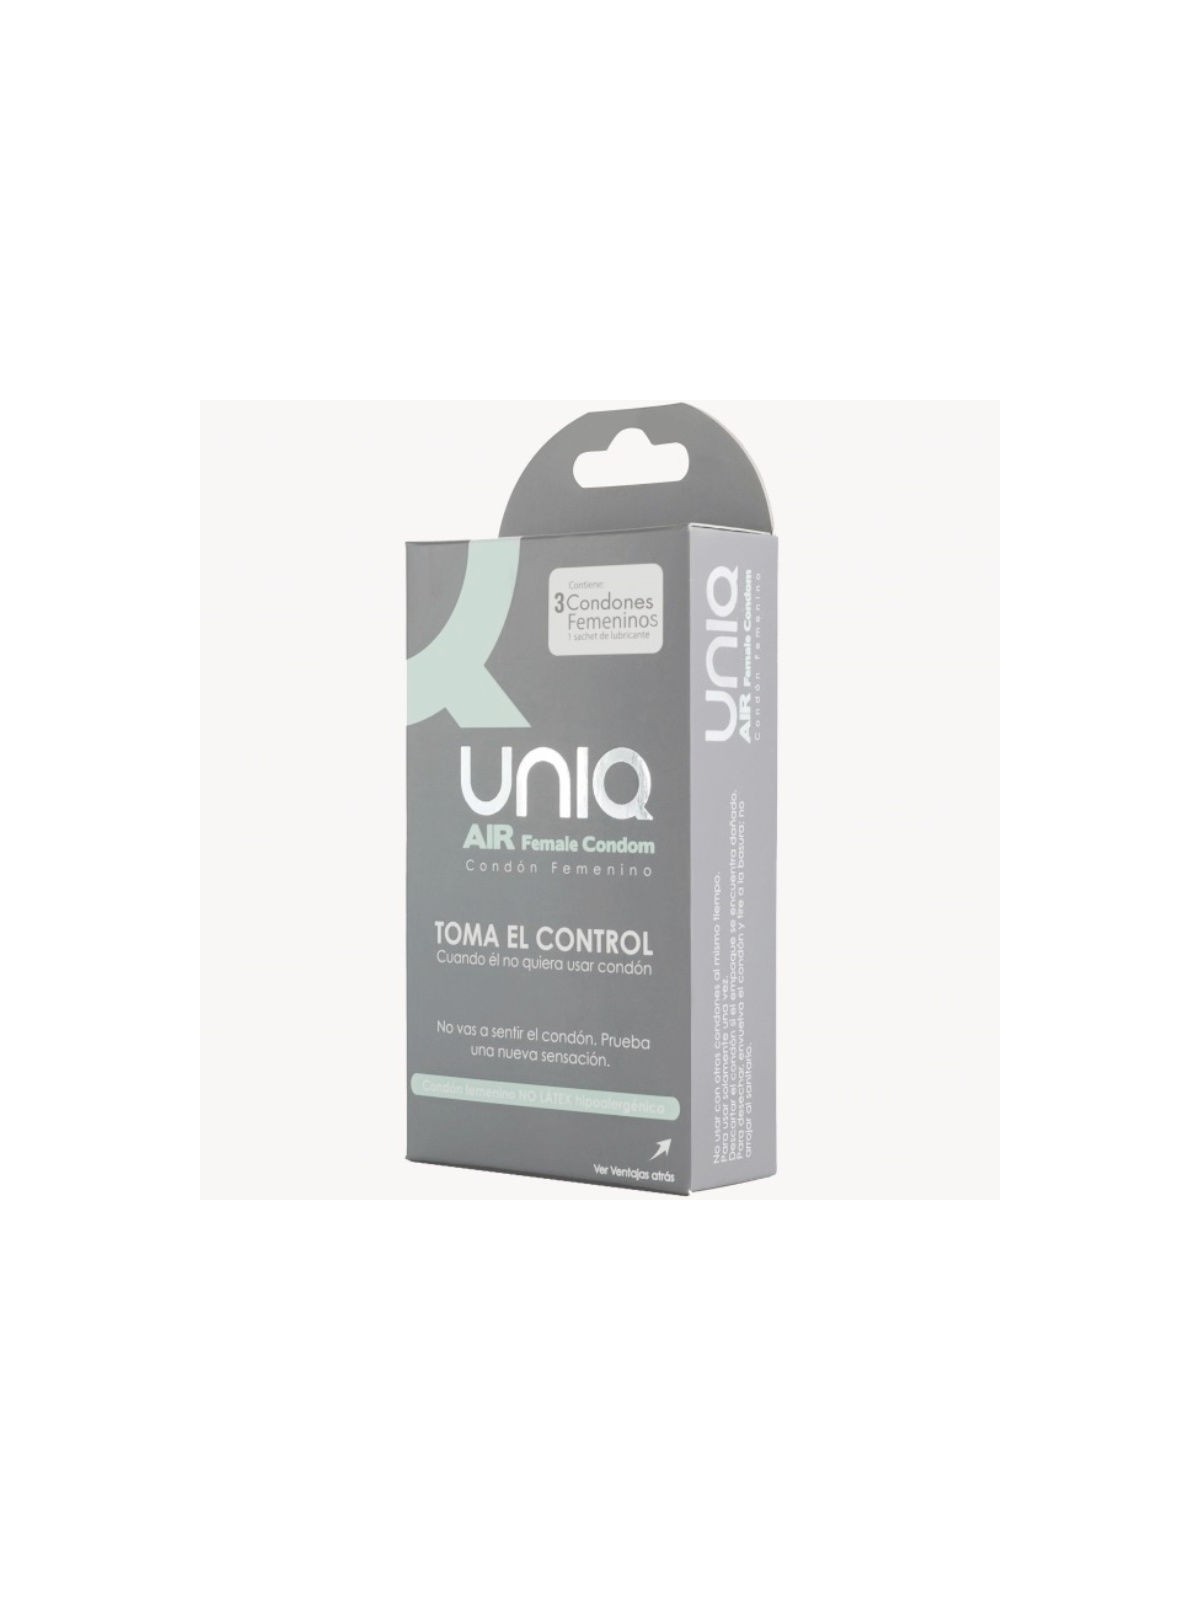 Uniq Air Condom Preservativo Femenino 3 uds - Comprar Condones especiales Unique - Preservativos especiales (1)